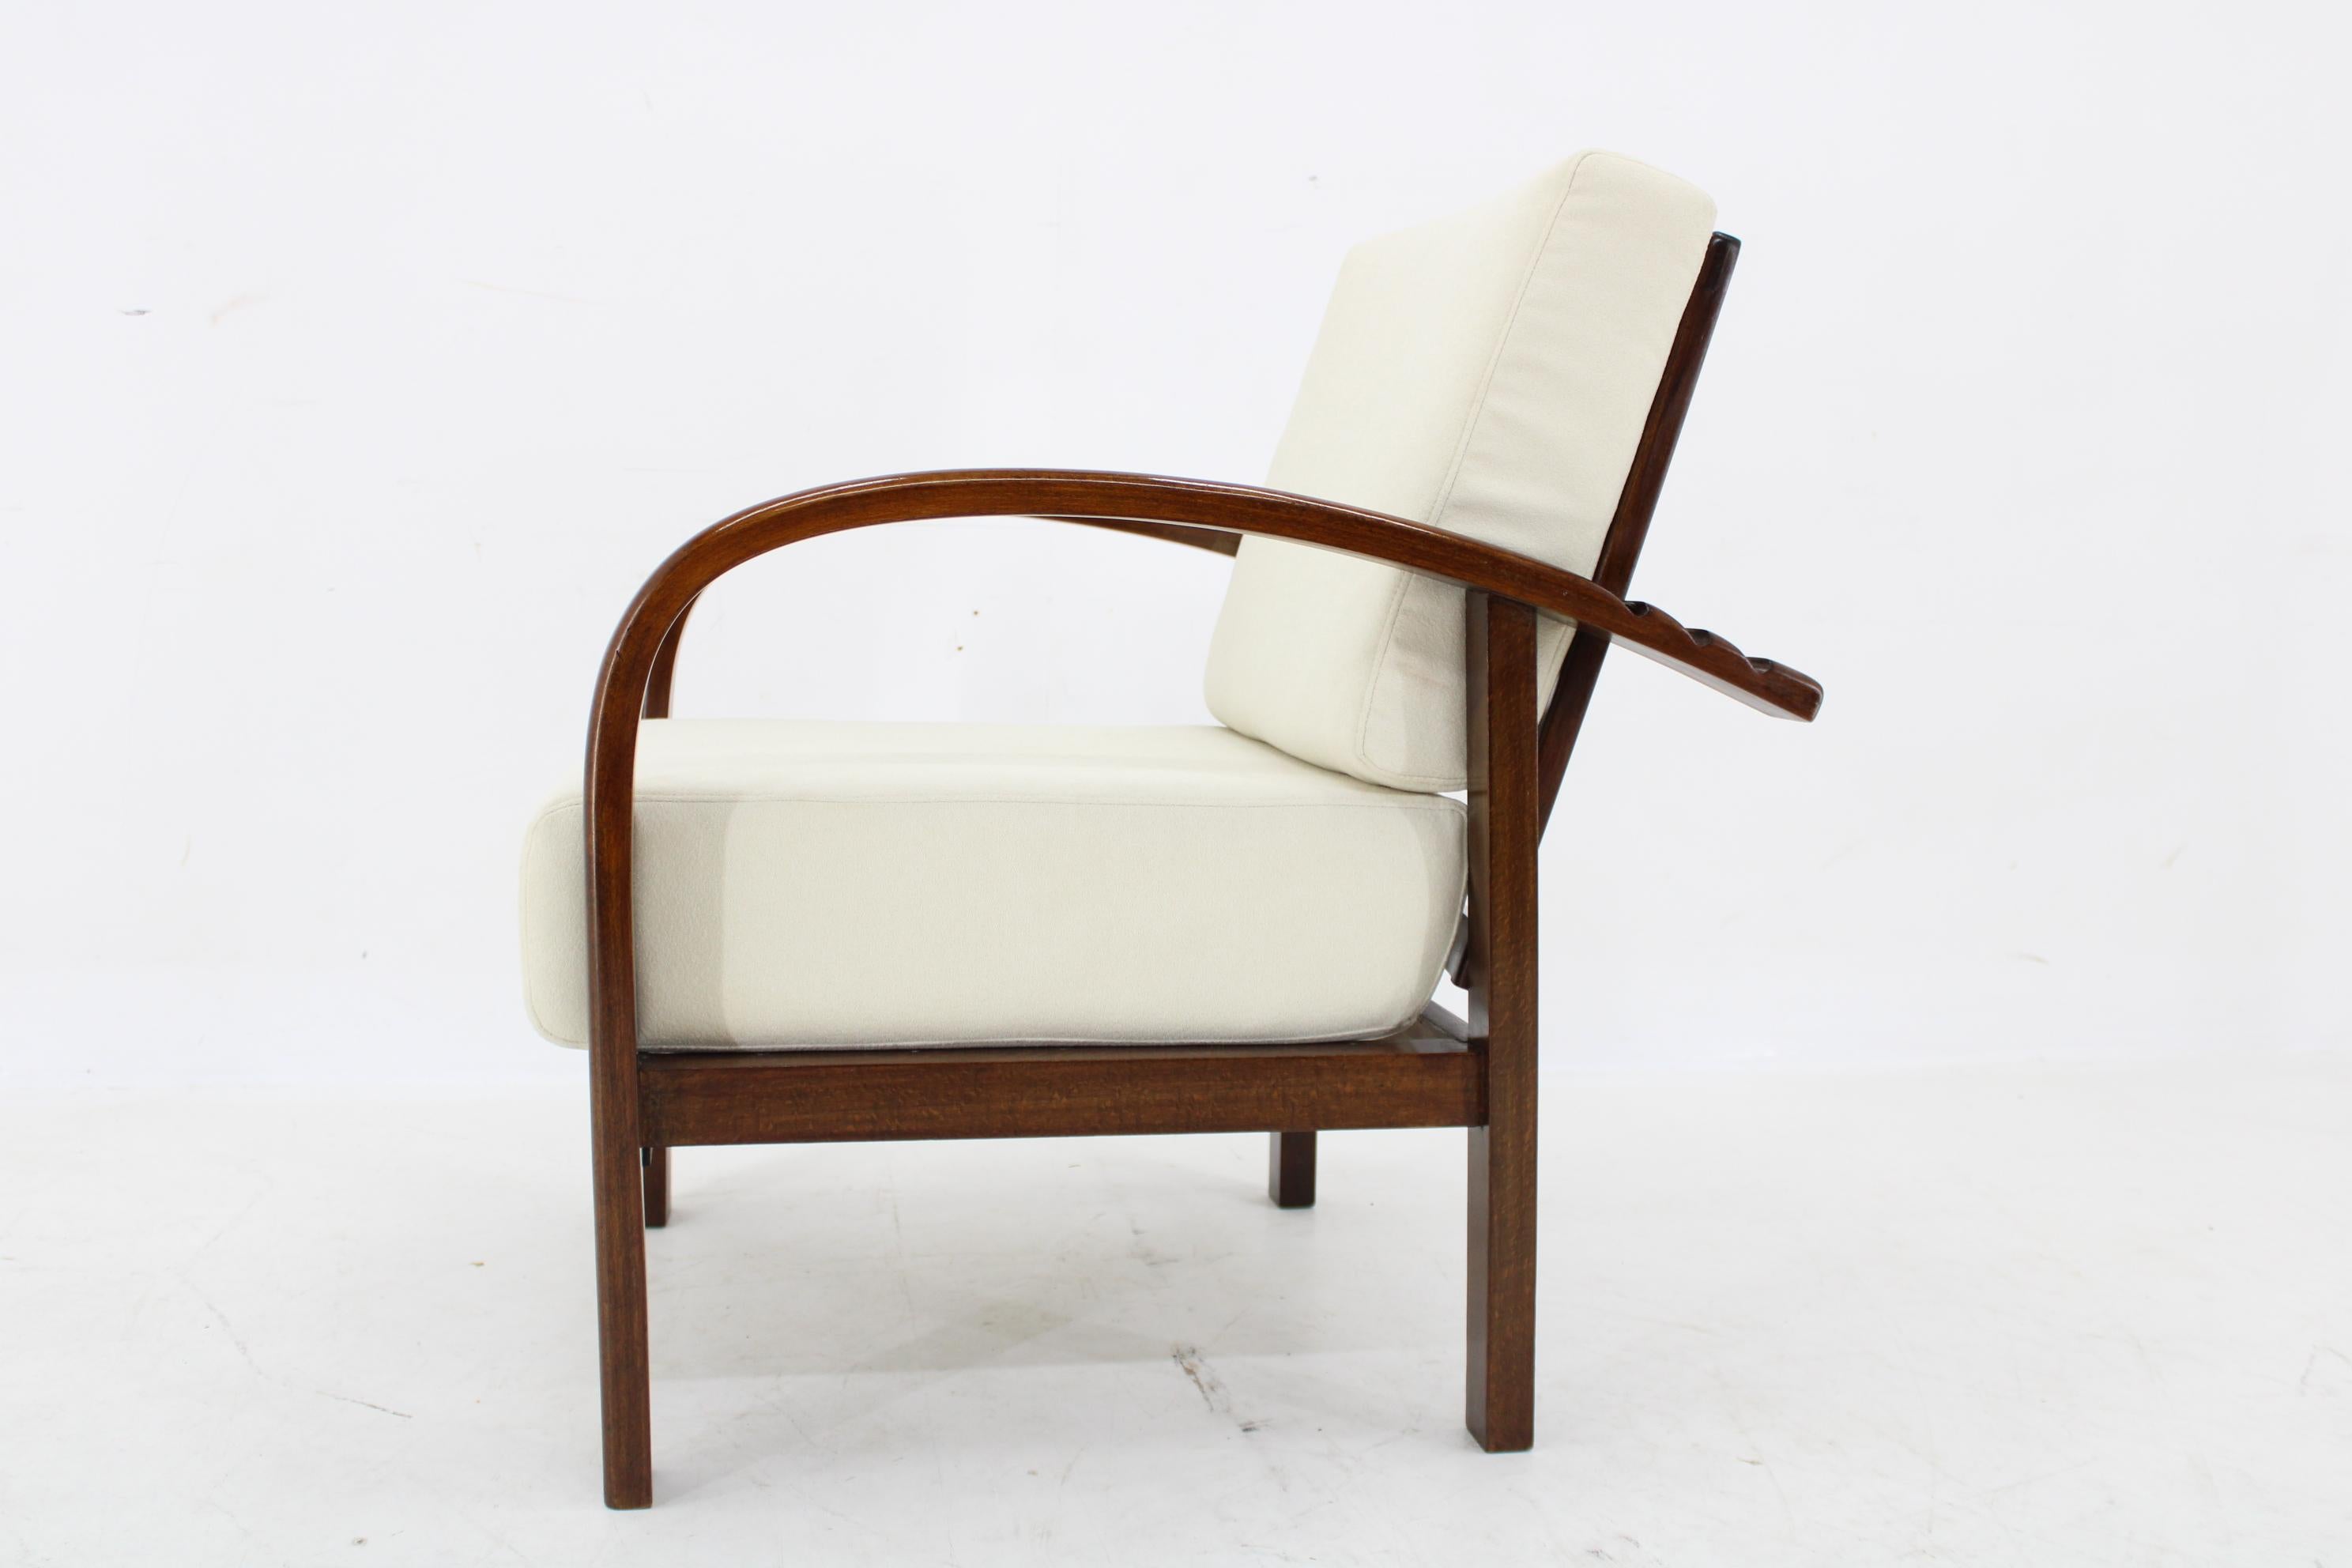 1930s Restored Art Deco Adjustable Armchair by Fischel, Czechoslovakia For Sale 2